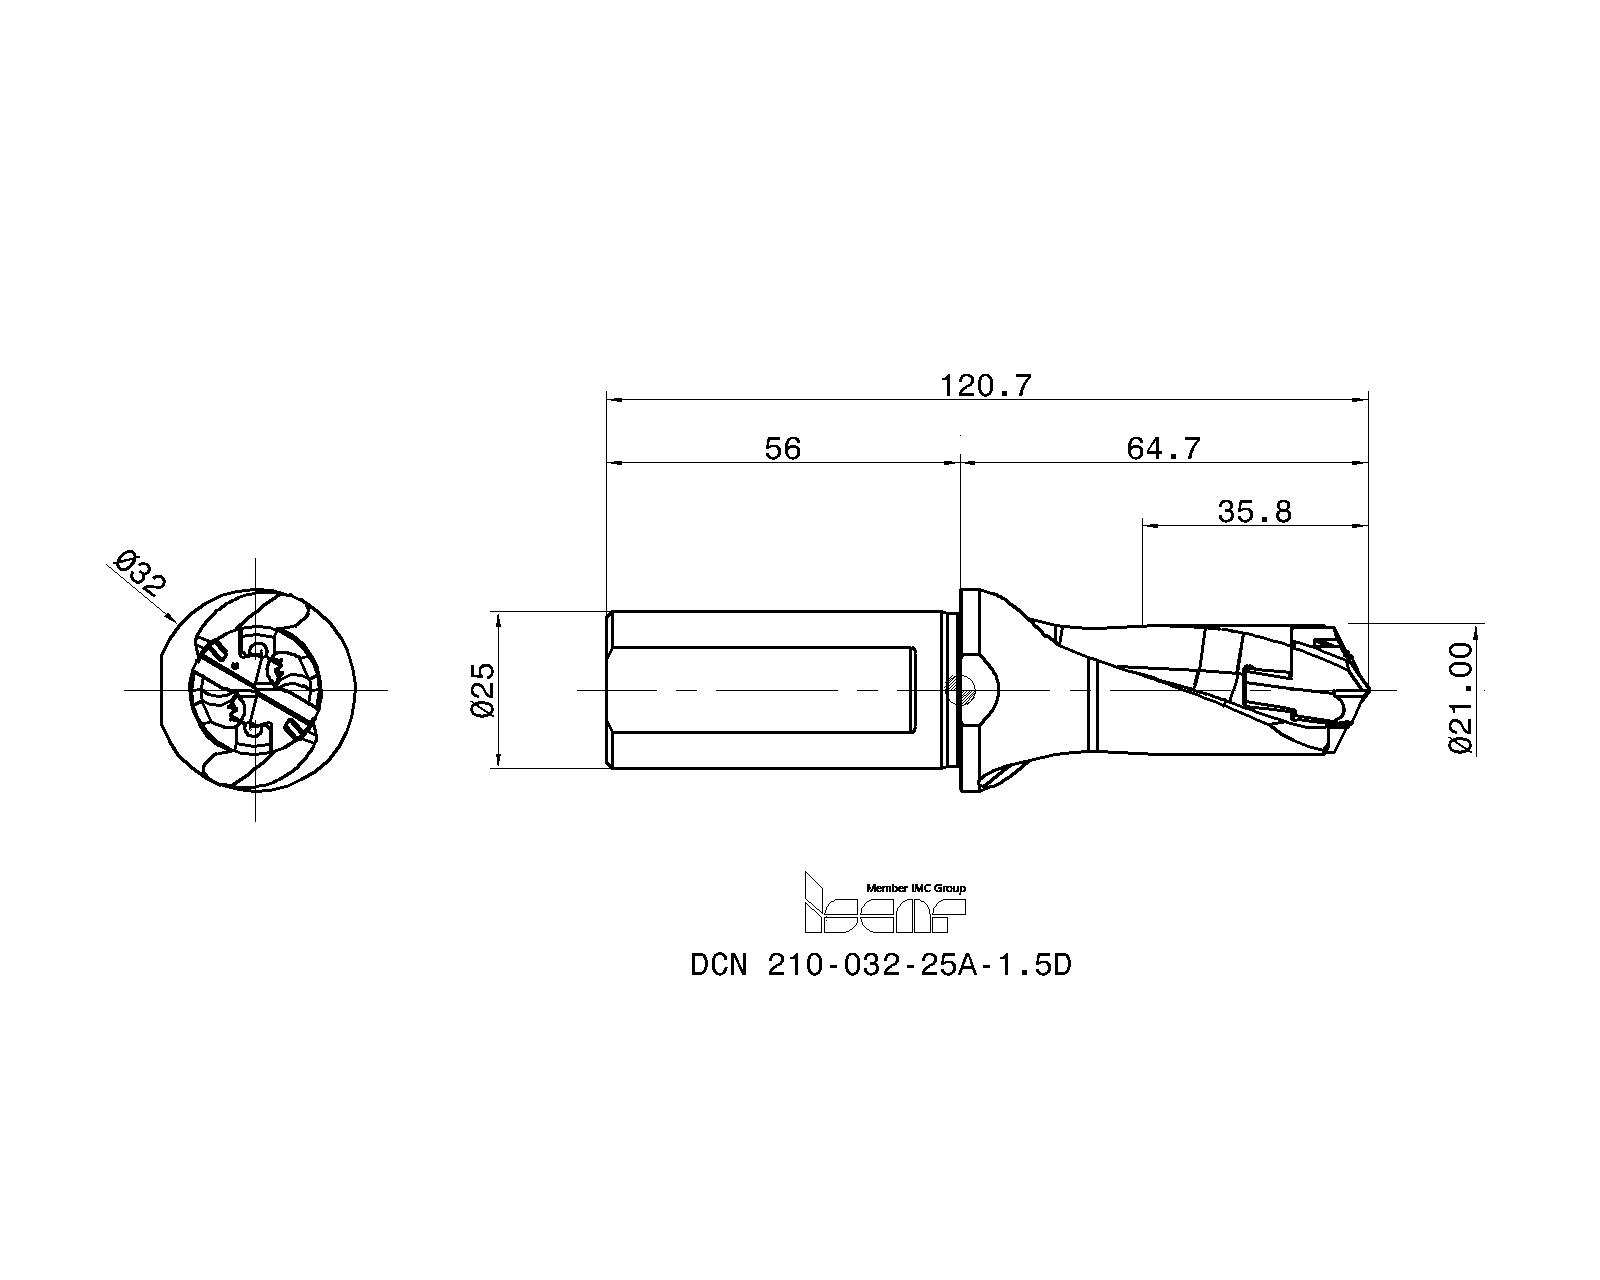 1x DCN 210-063-25A-3D + 1x ICP 210 IC908 ISCAR Sumo Cham Drill original neu